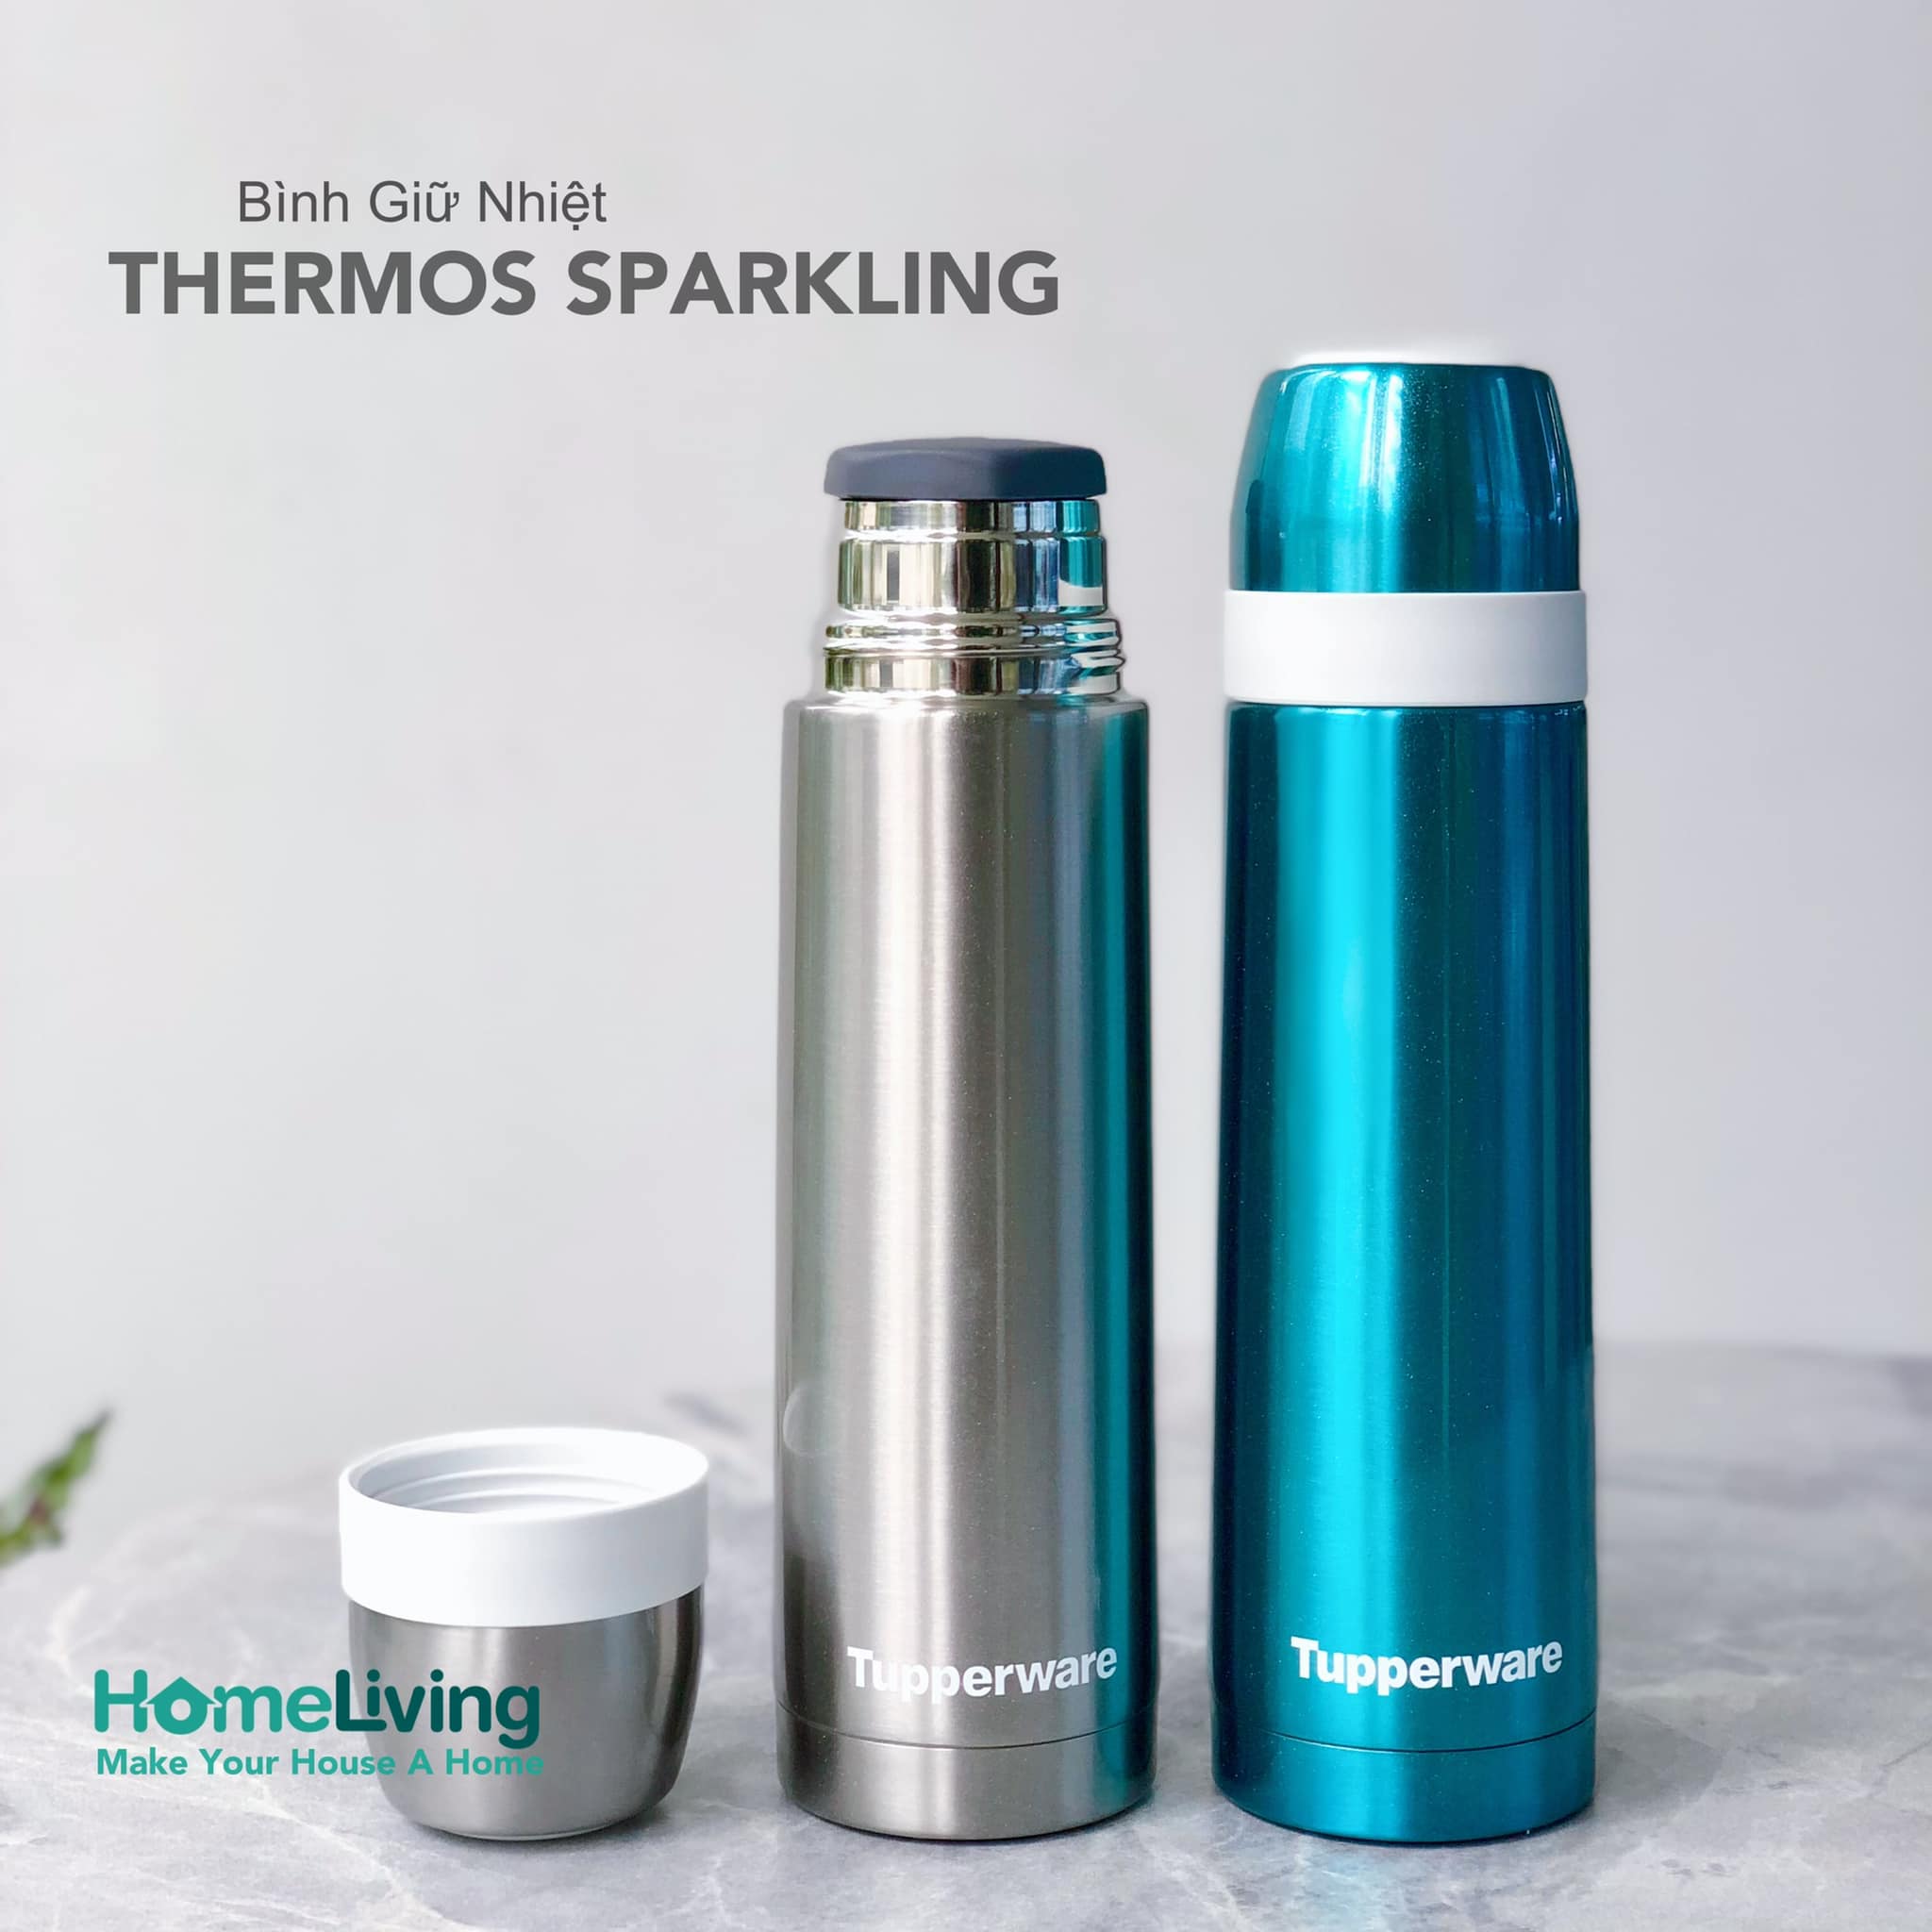 Bình giữ nhiệt Thermos Sparkling 500ml Tupperware chính hãng